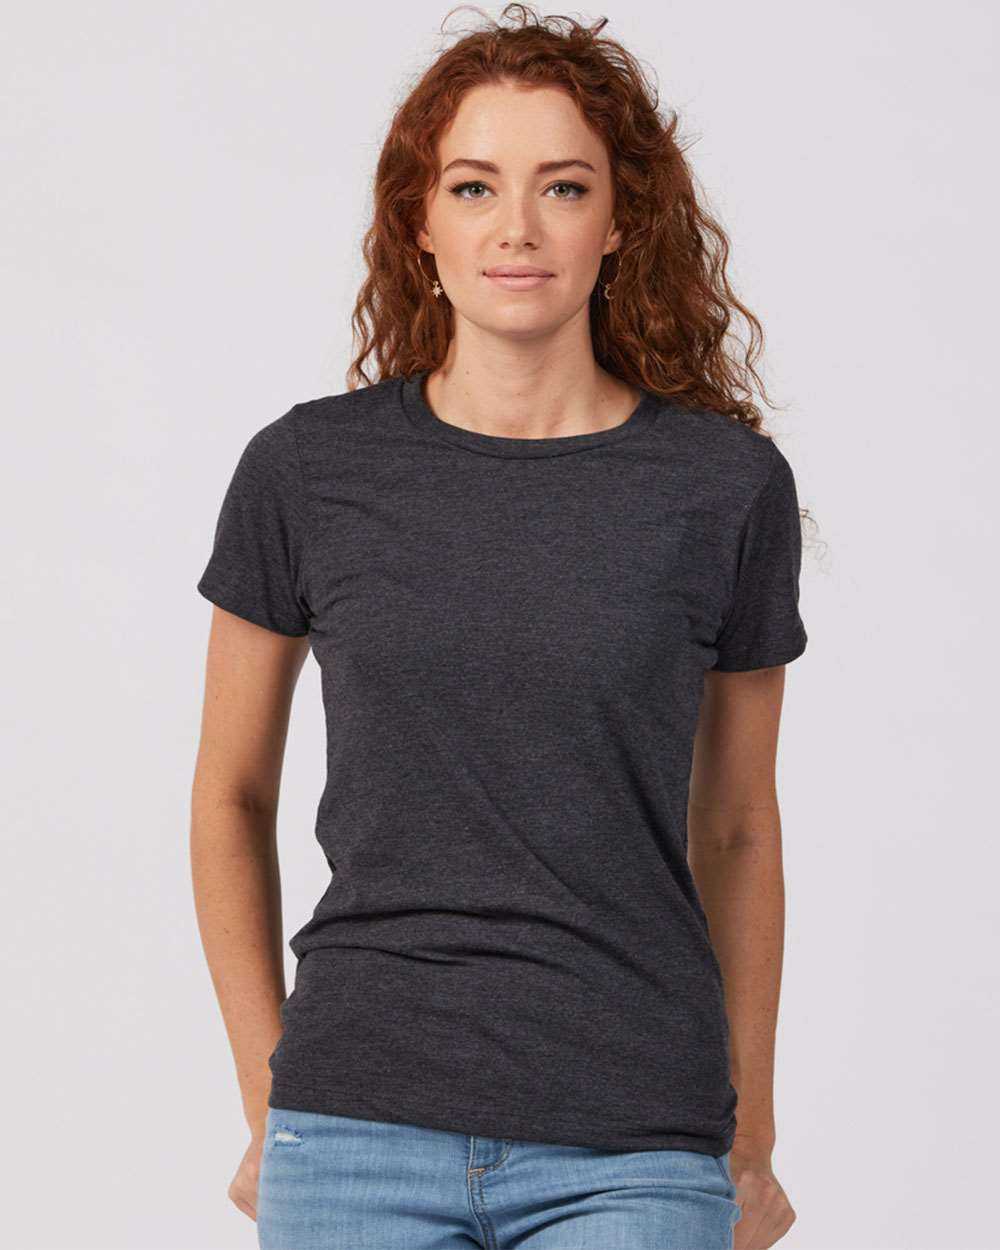 Tultex 542 Women's Premium Cotton Blend T-Shirt - Black Heather - HIT a Double